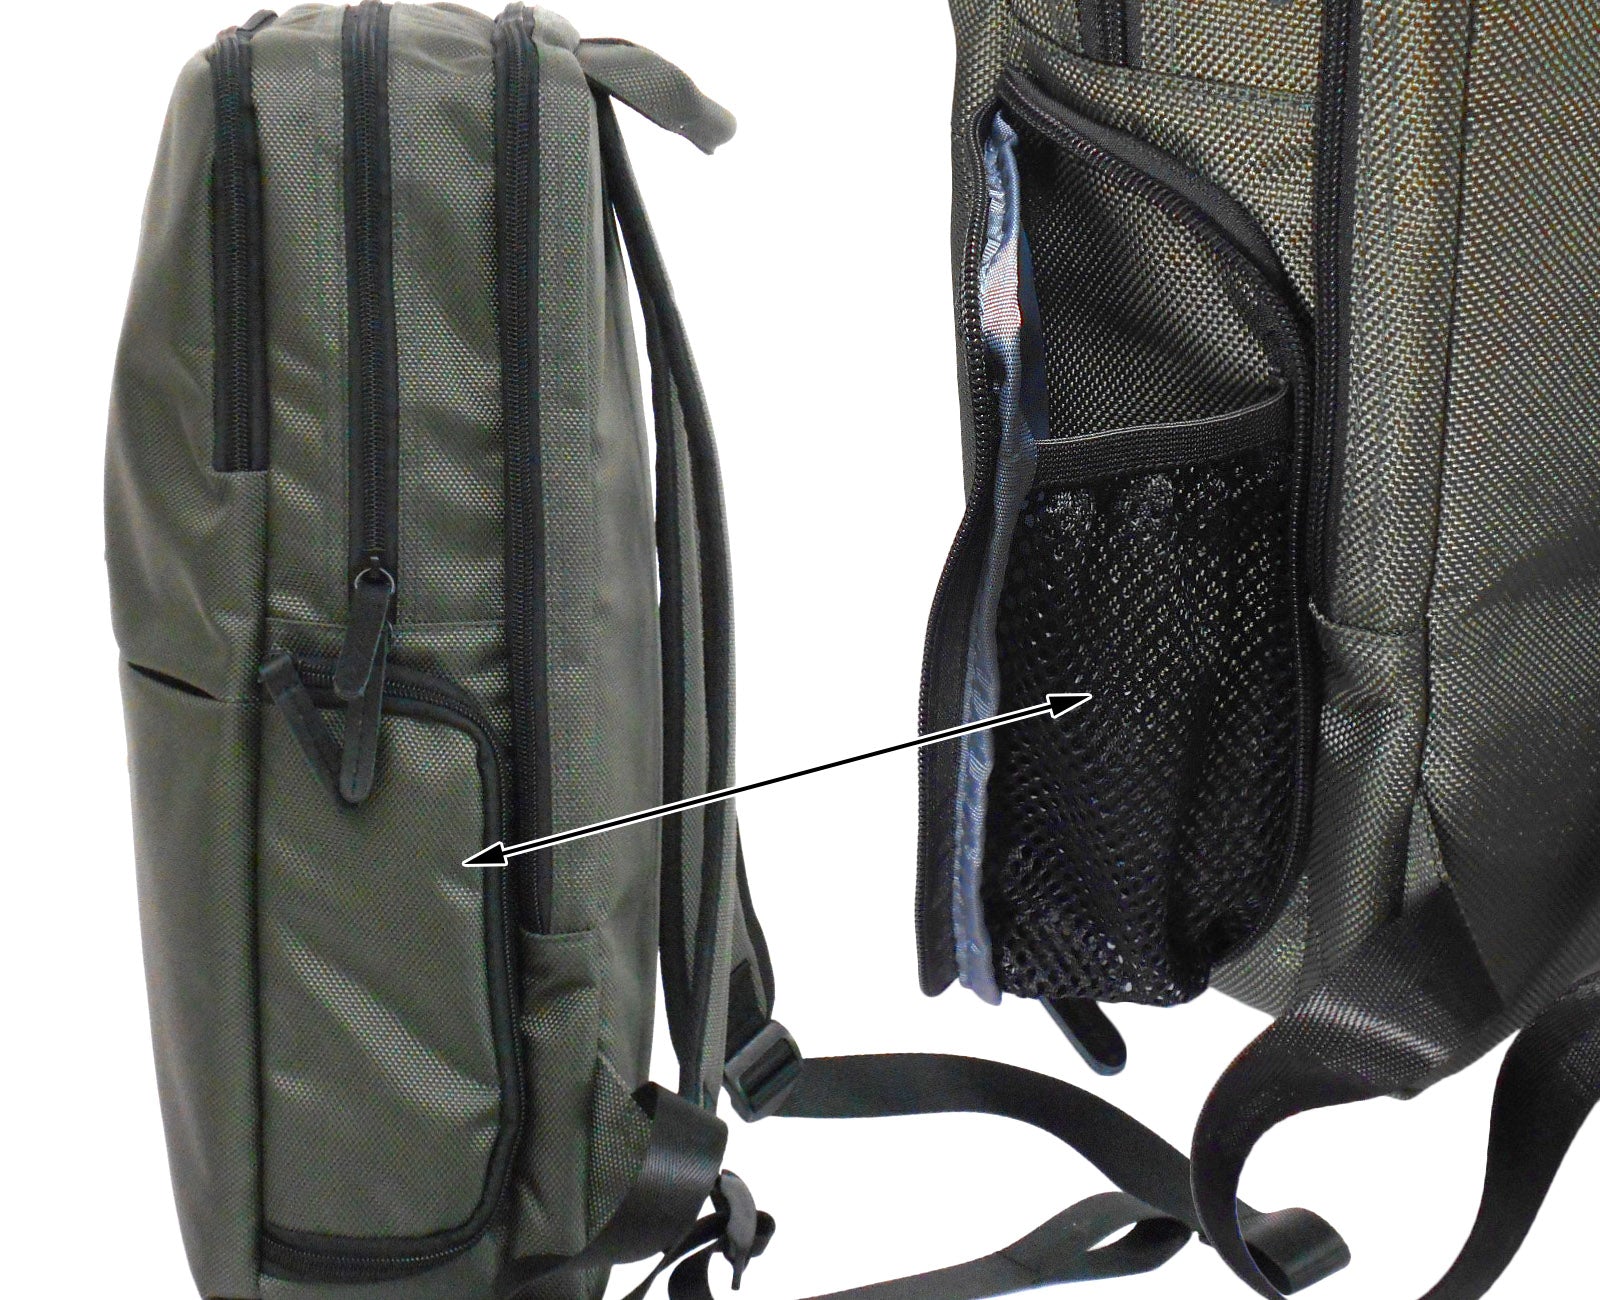 Office Backpack + Insert Organizer Set Smart Work Bag Job Office College File Storage Olive Green